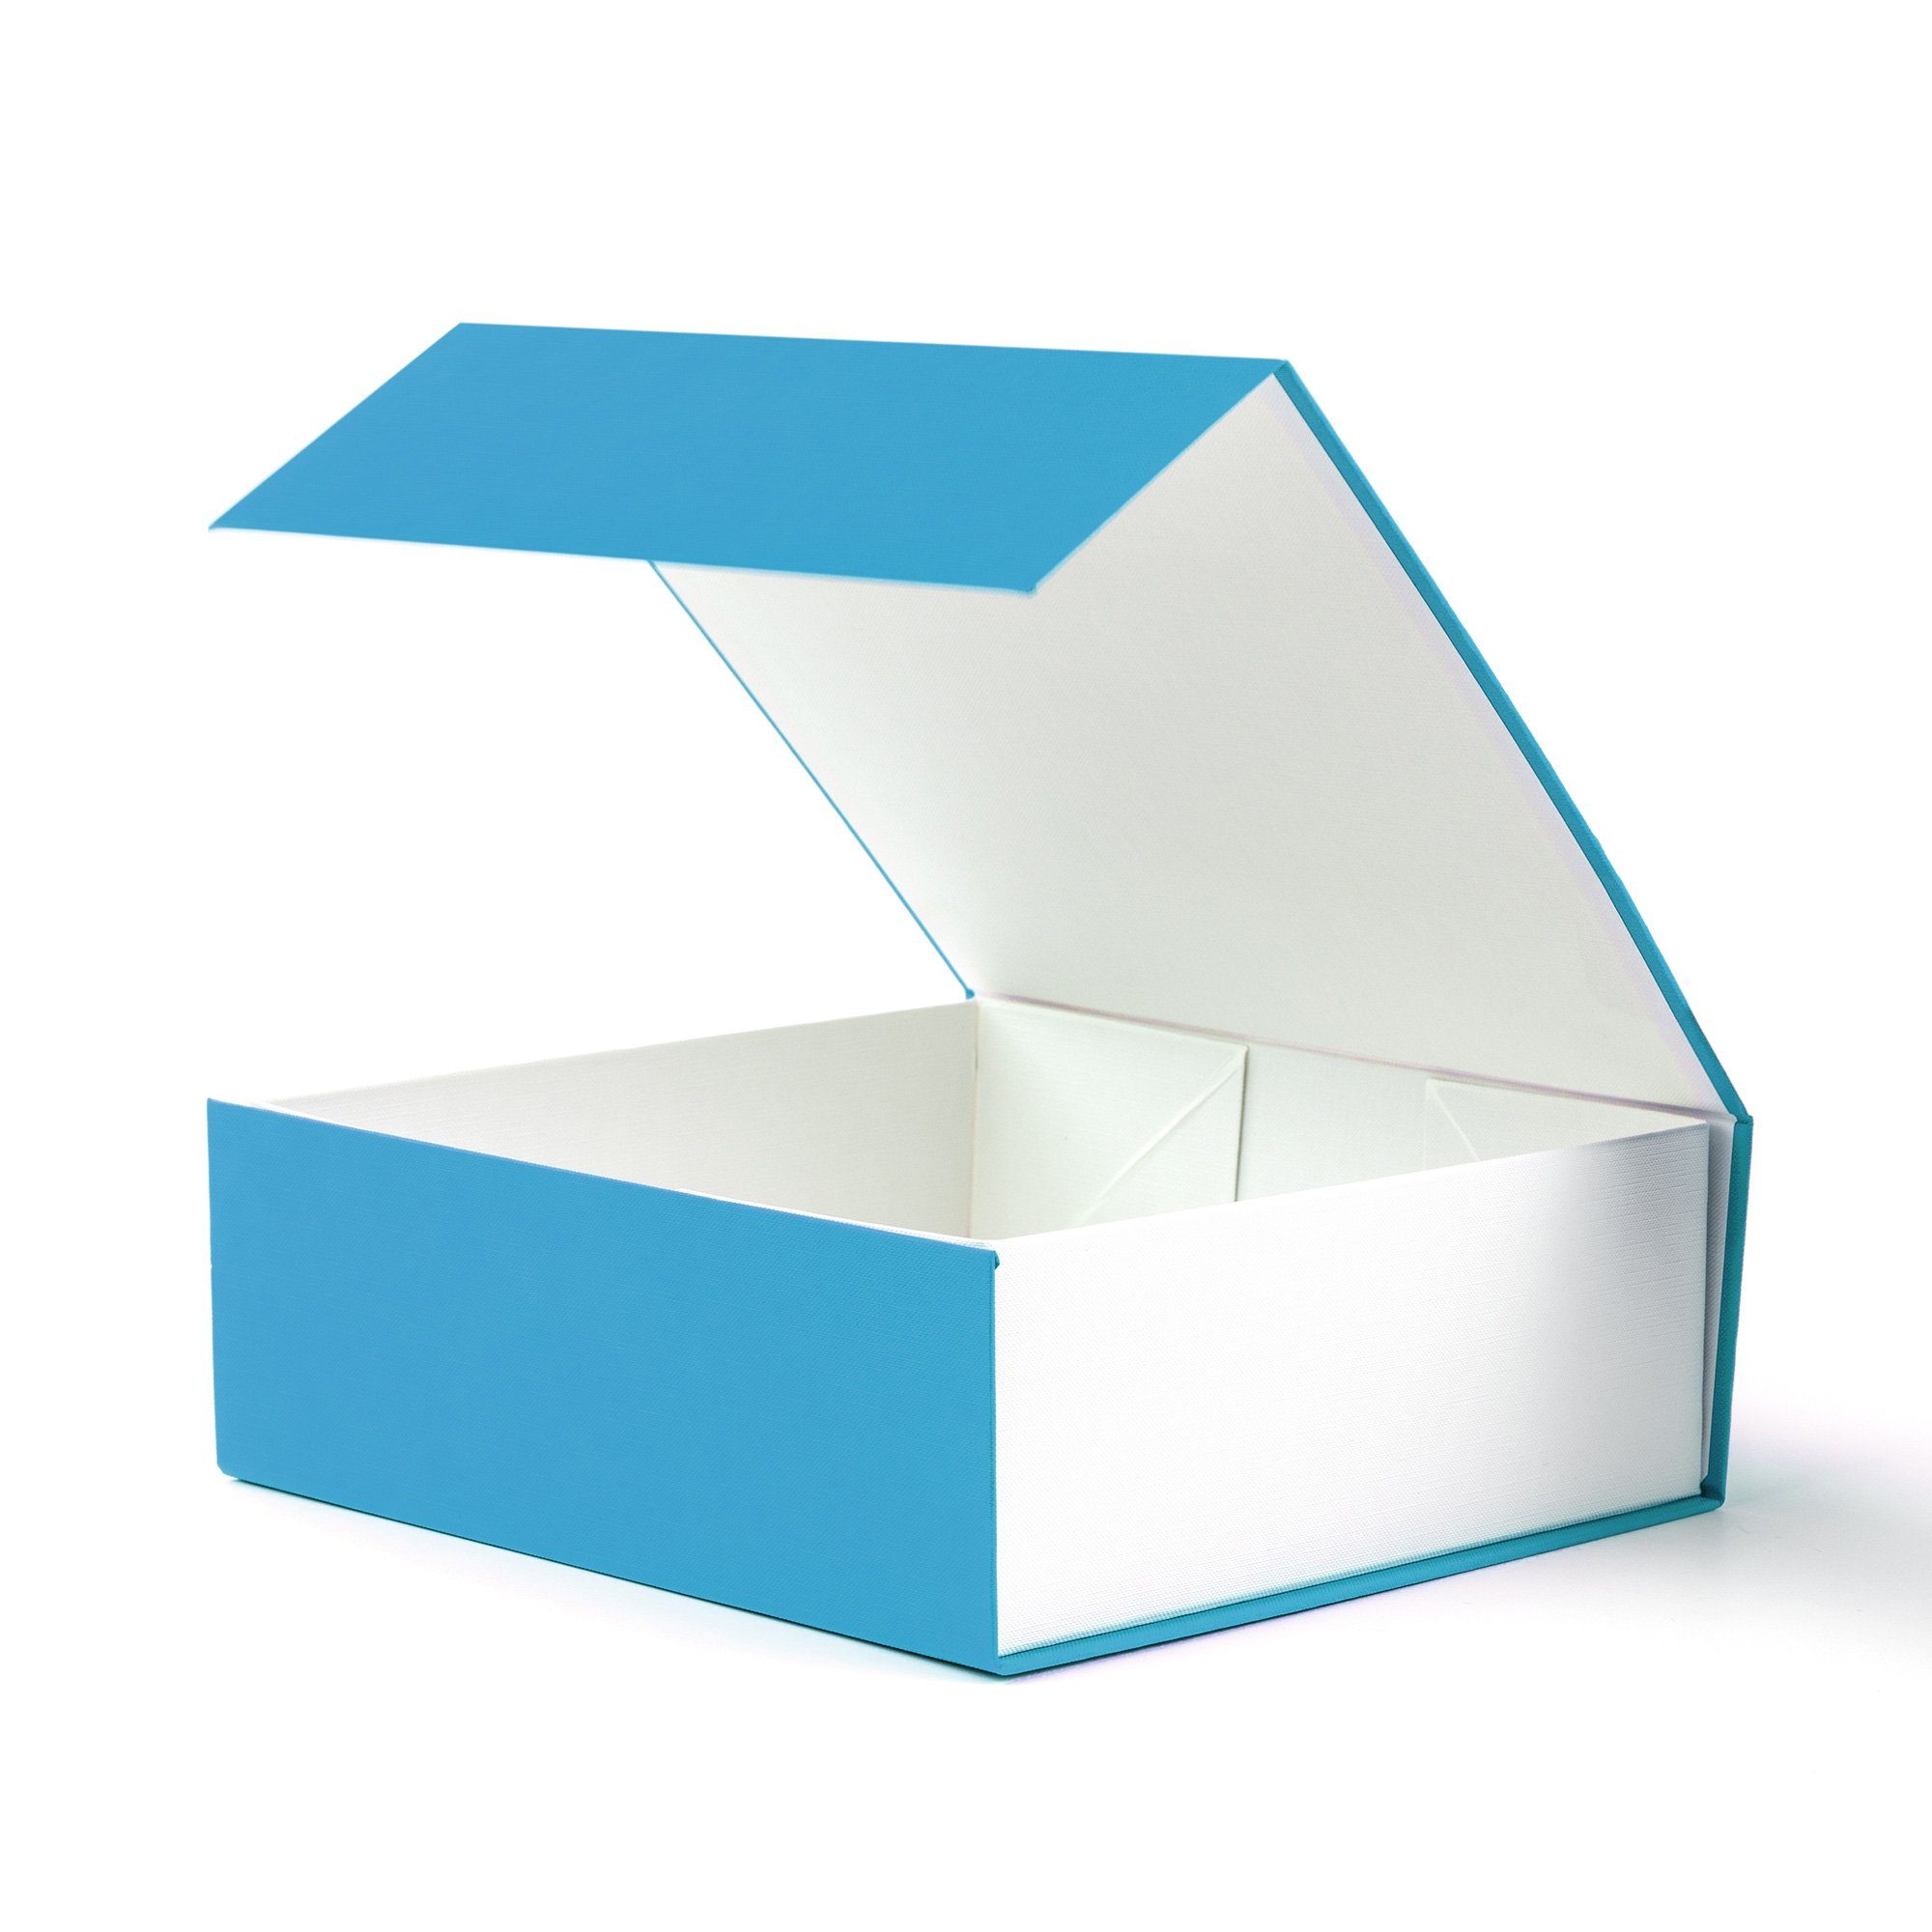 Aufbewahrungsbox Geschenkbox Rechteck mit Deckel und Magnet für Hochzeiten, Geburtstagsgeschenk und Babybrautjungfer Geschenkbox